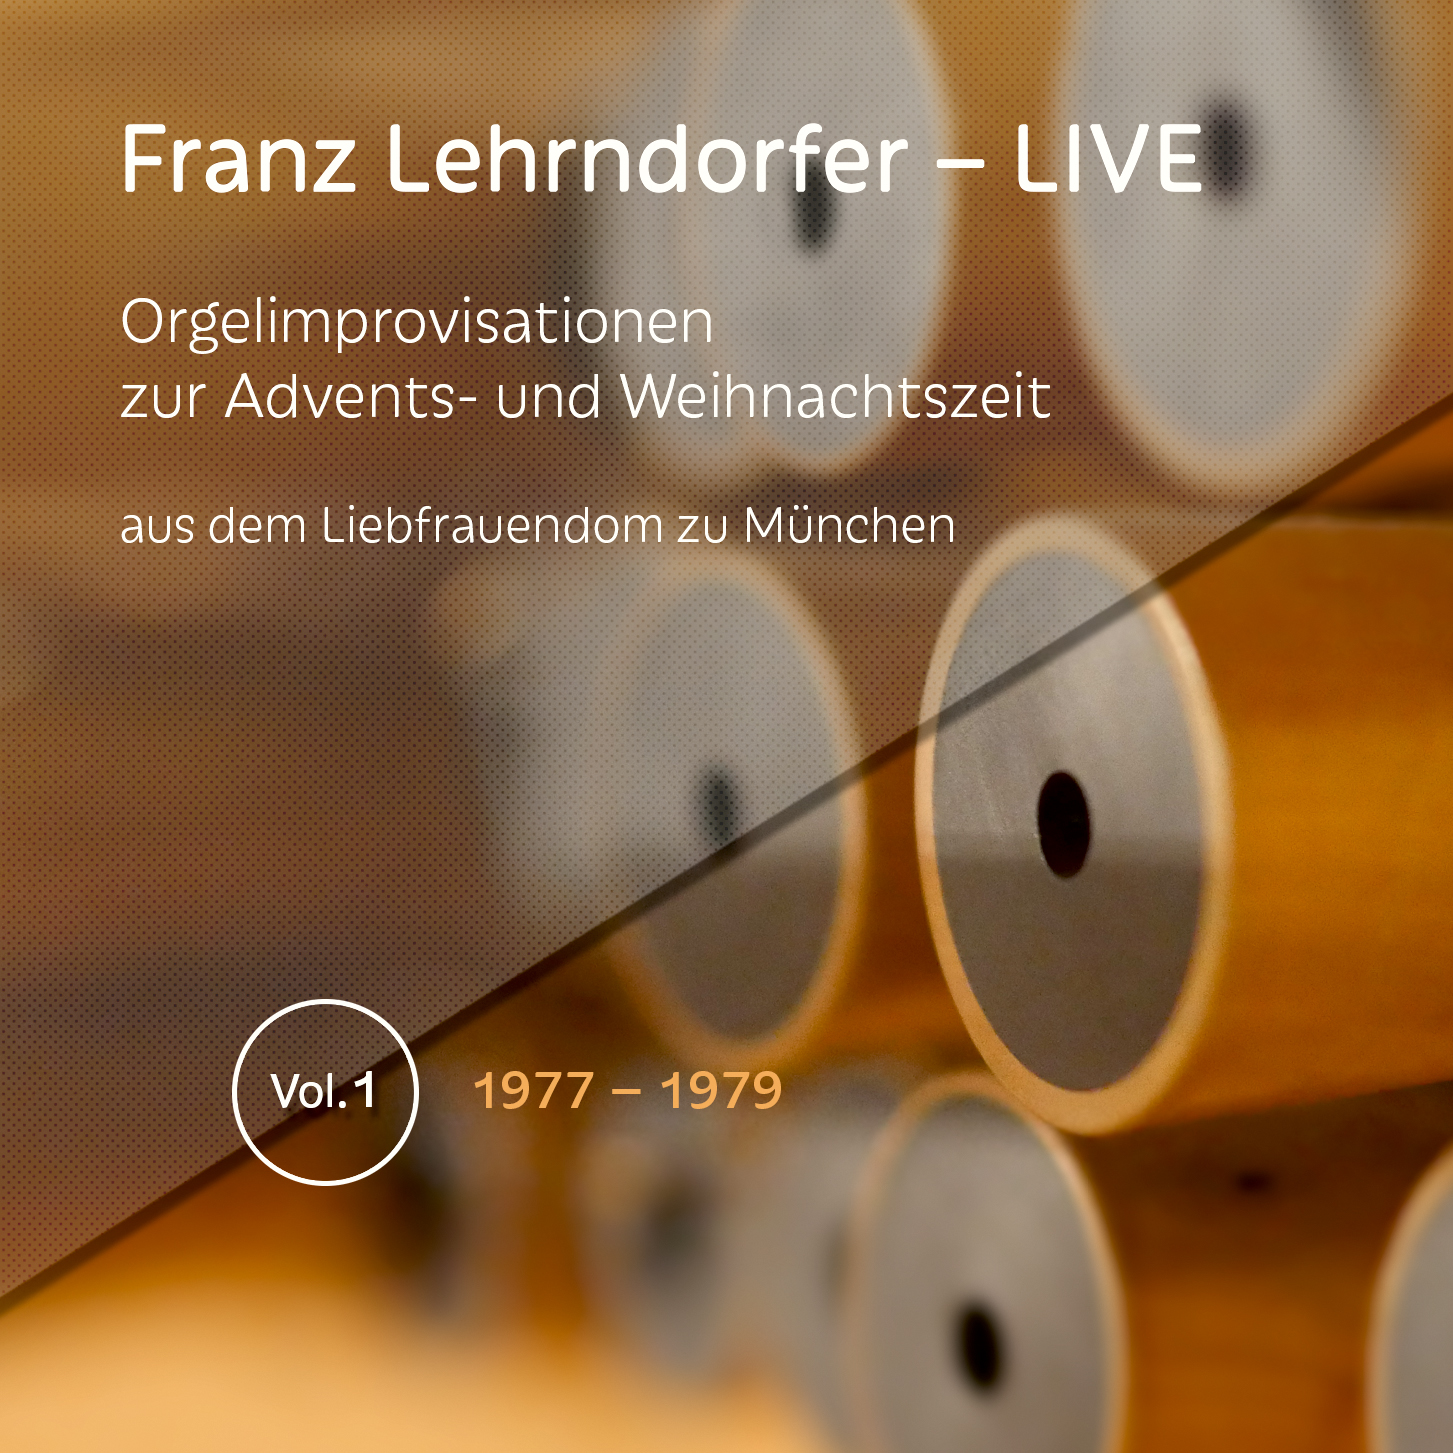 Franz_Lehrndorfer_LIVE_Vol-1_front-cover_presse